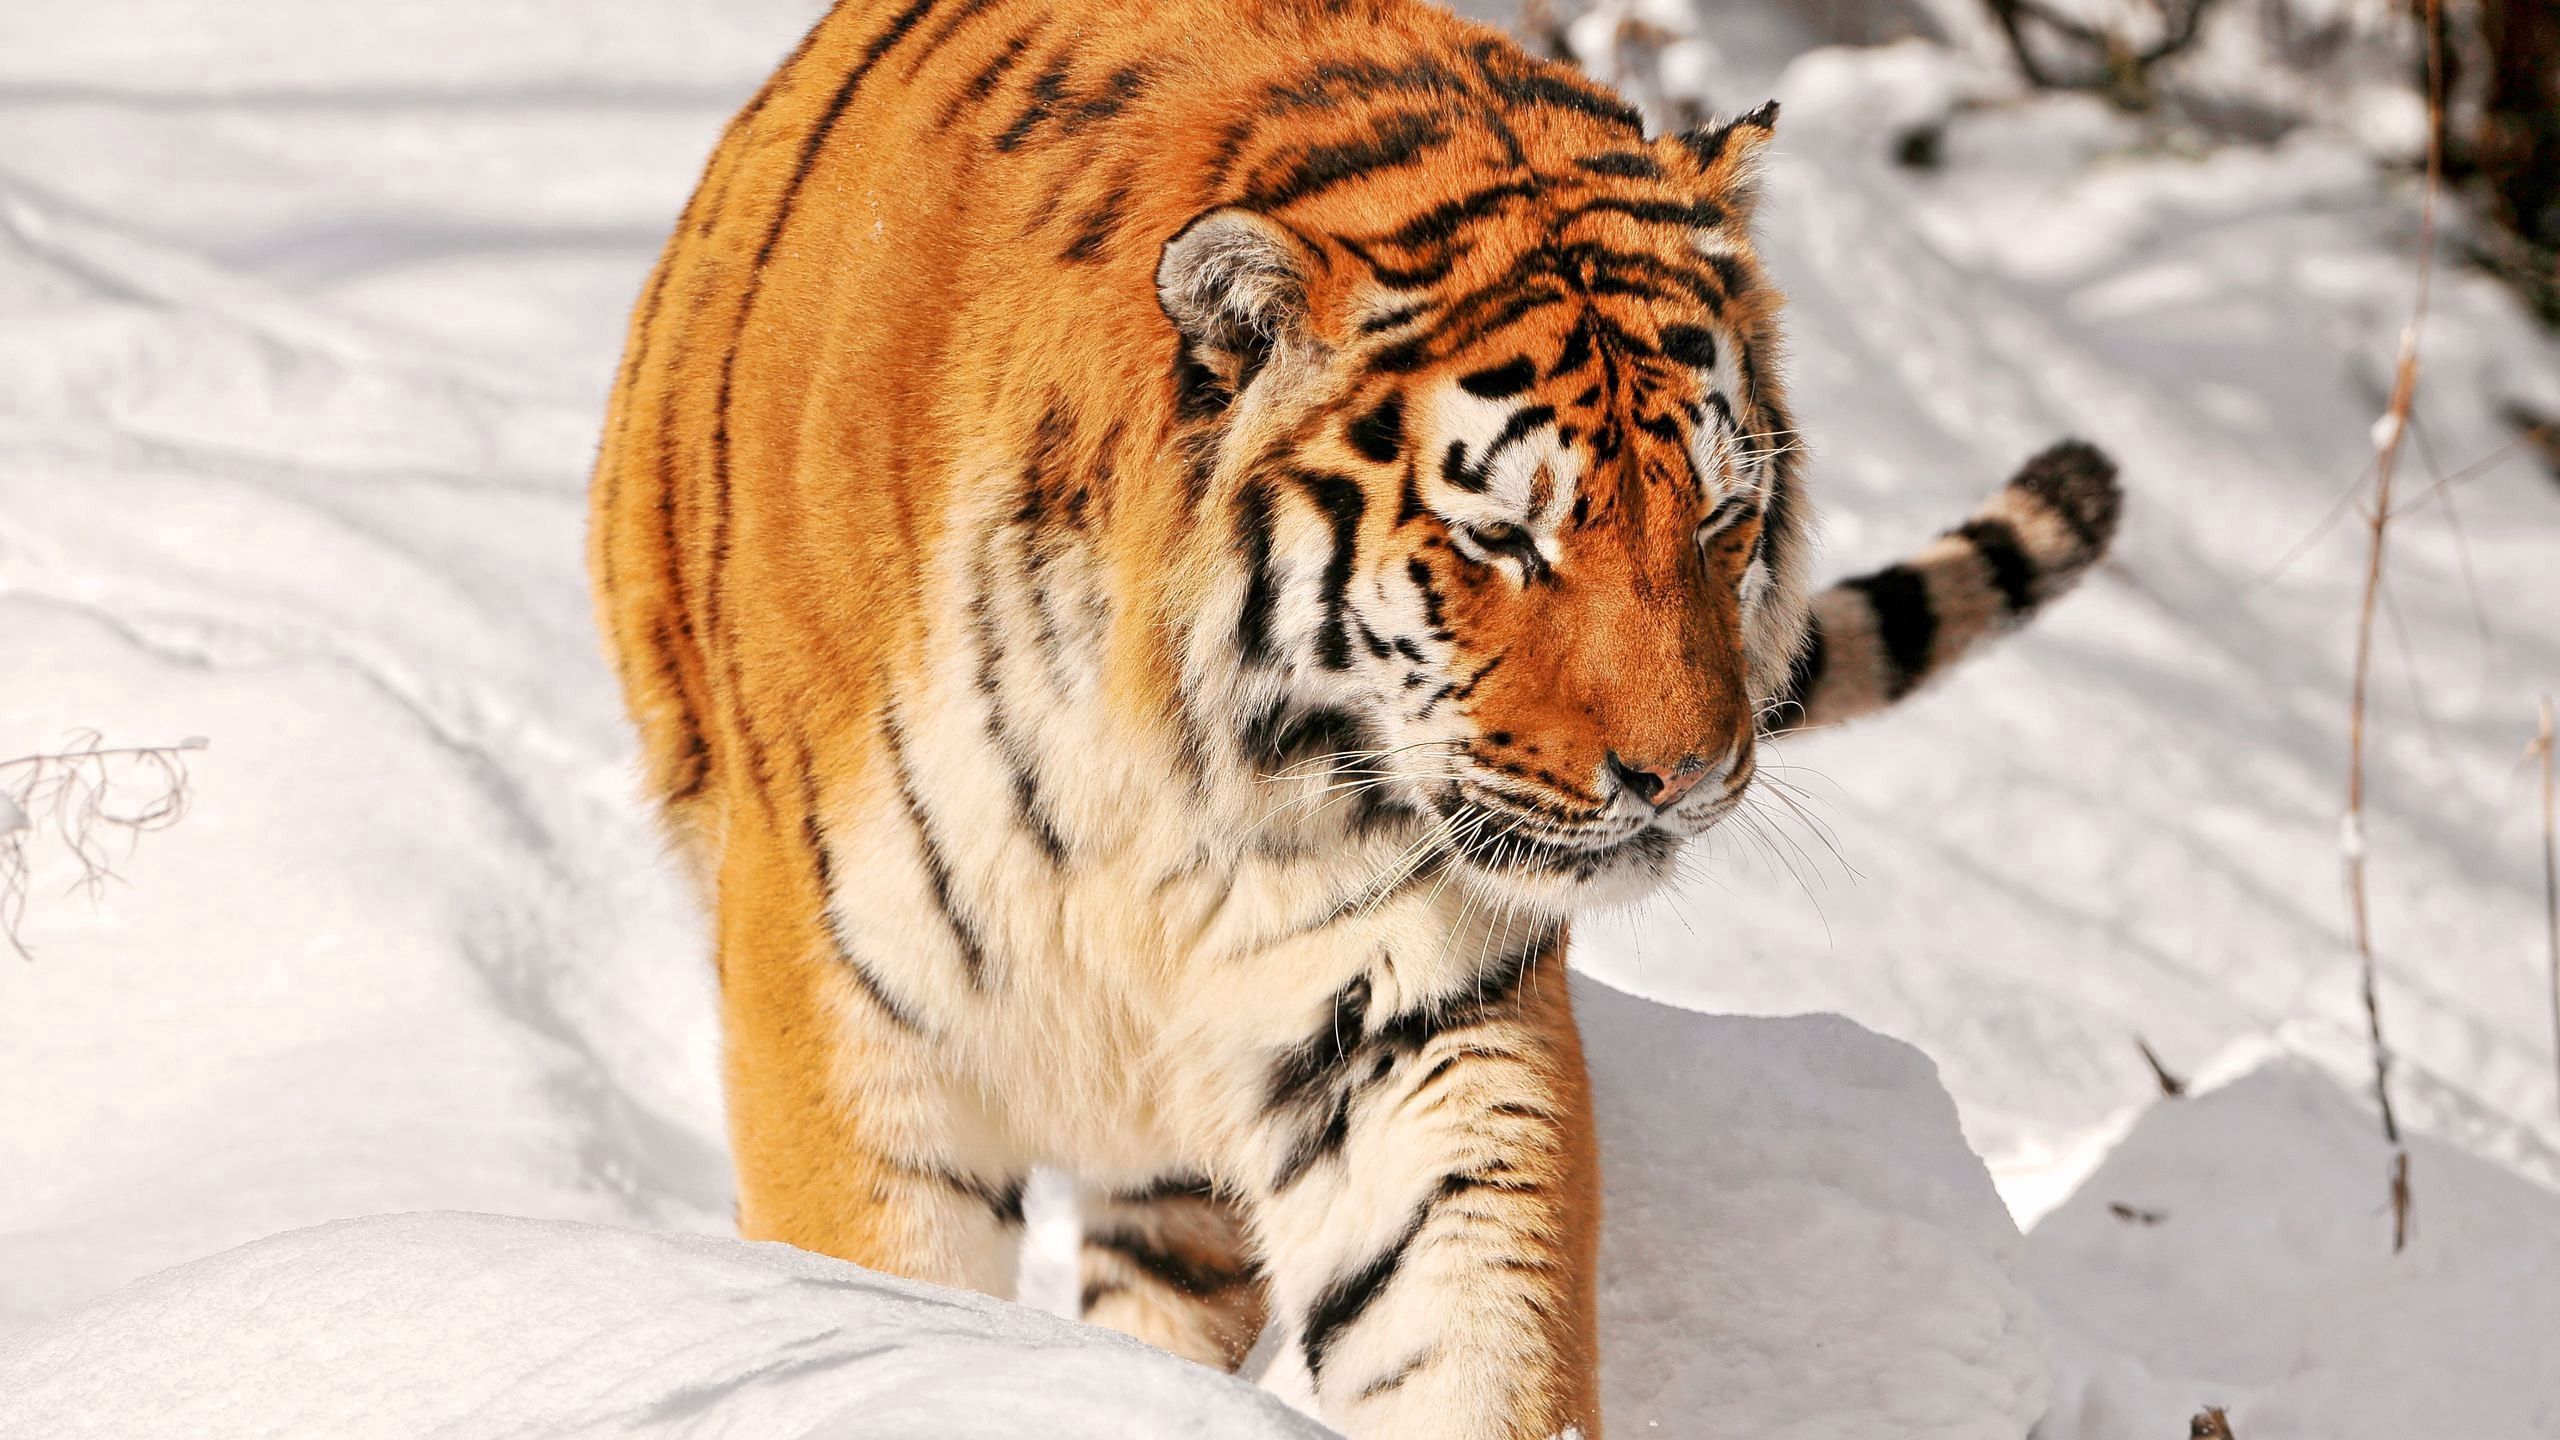 Скачать обои бесплатно Прогулка, Снег, Животные, Хищник, Тигр картинка на рабочий стол ПК